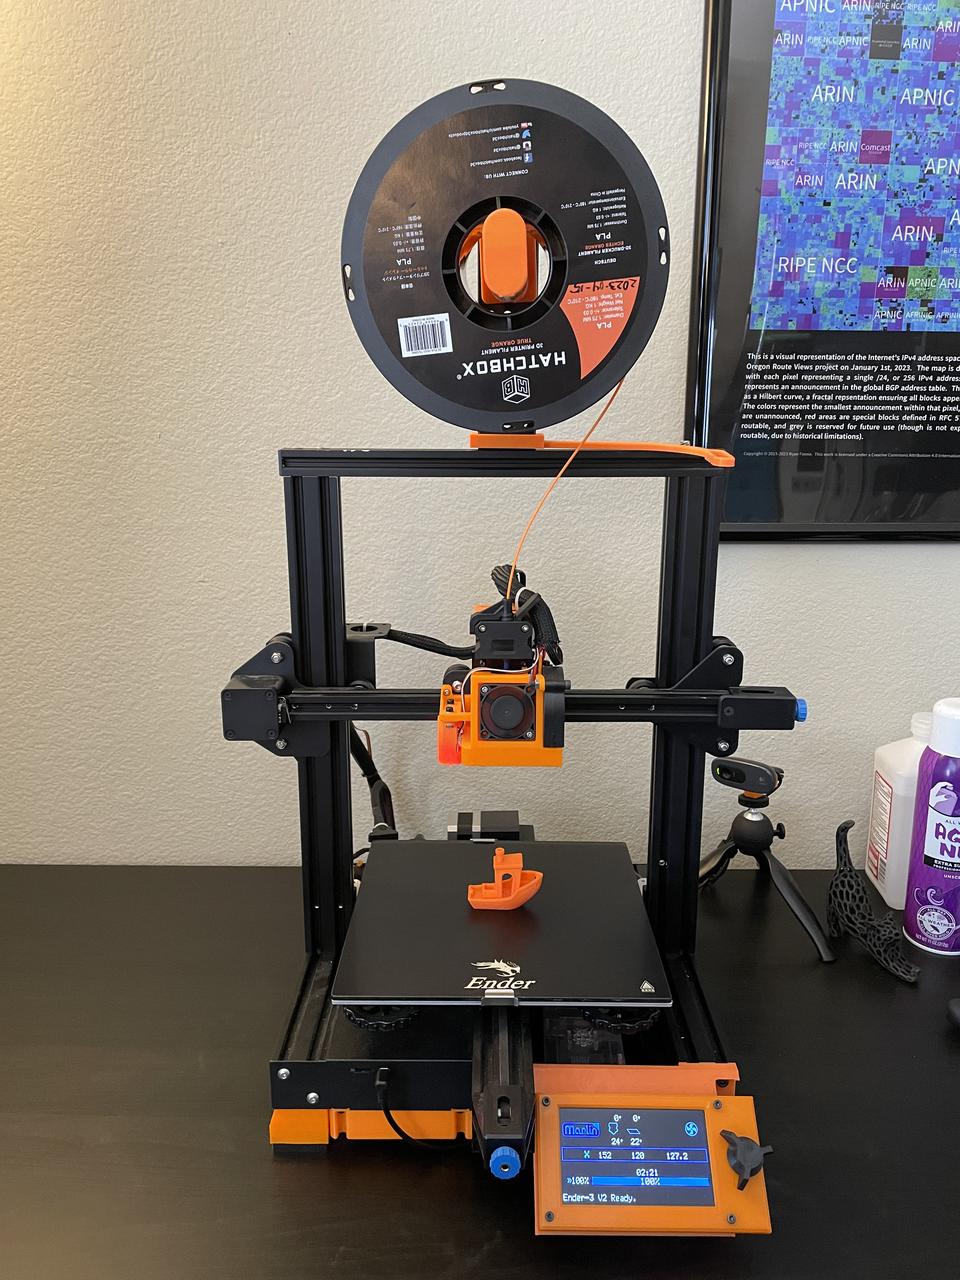 Ender 3 V2 3D printer, heavily modified